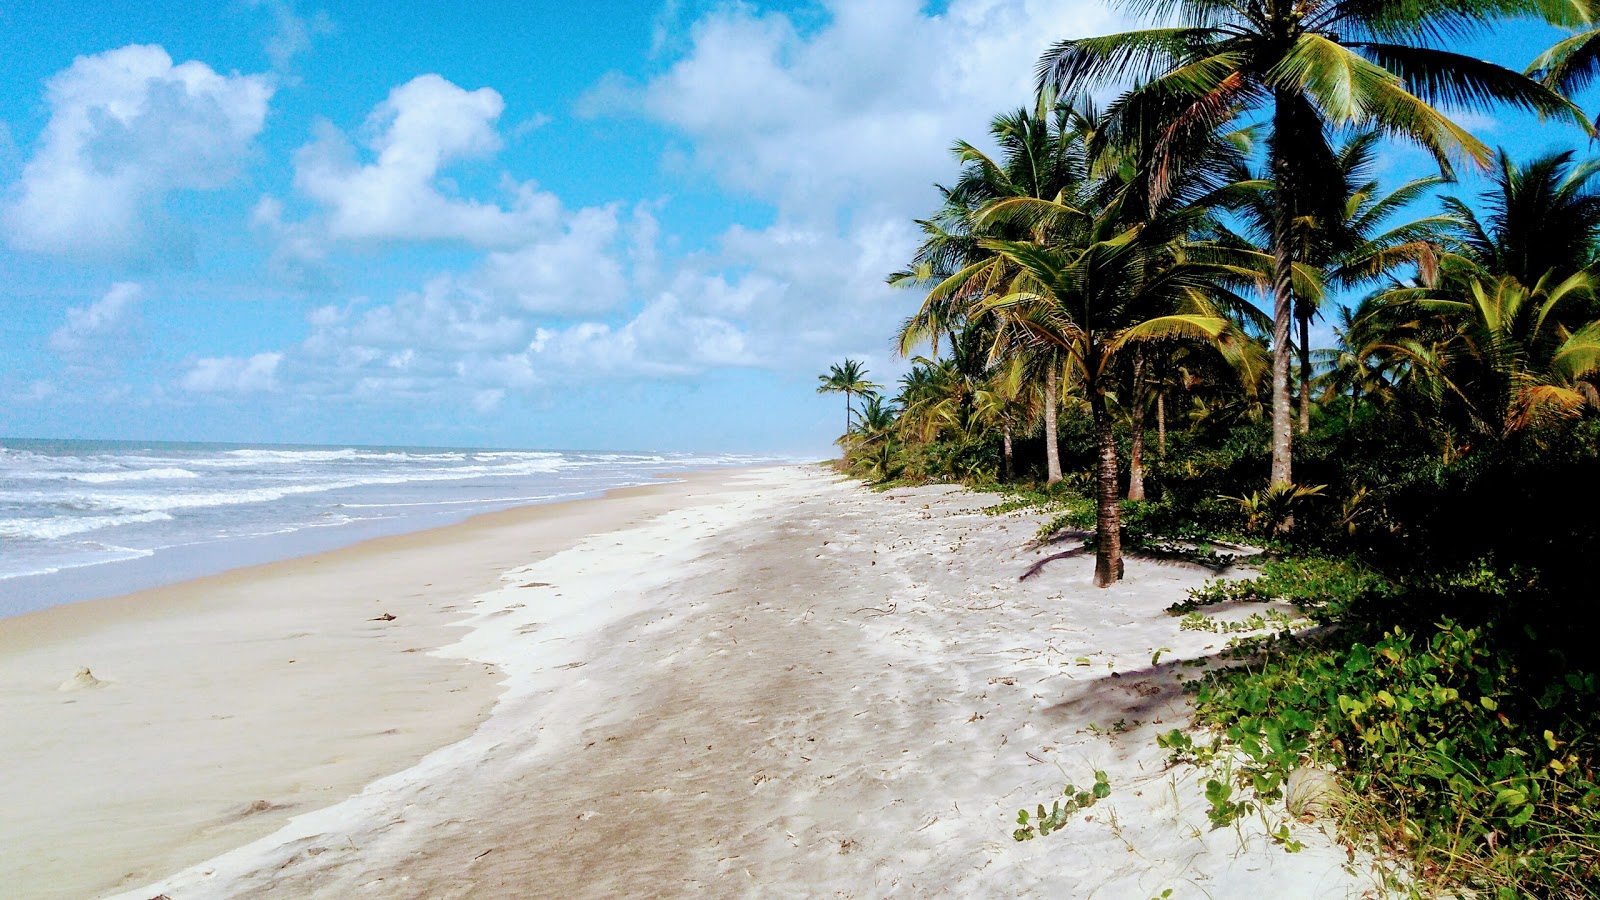 Foto af Praia de Itacarezinho - populært sted blandt afslapningskendere